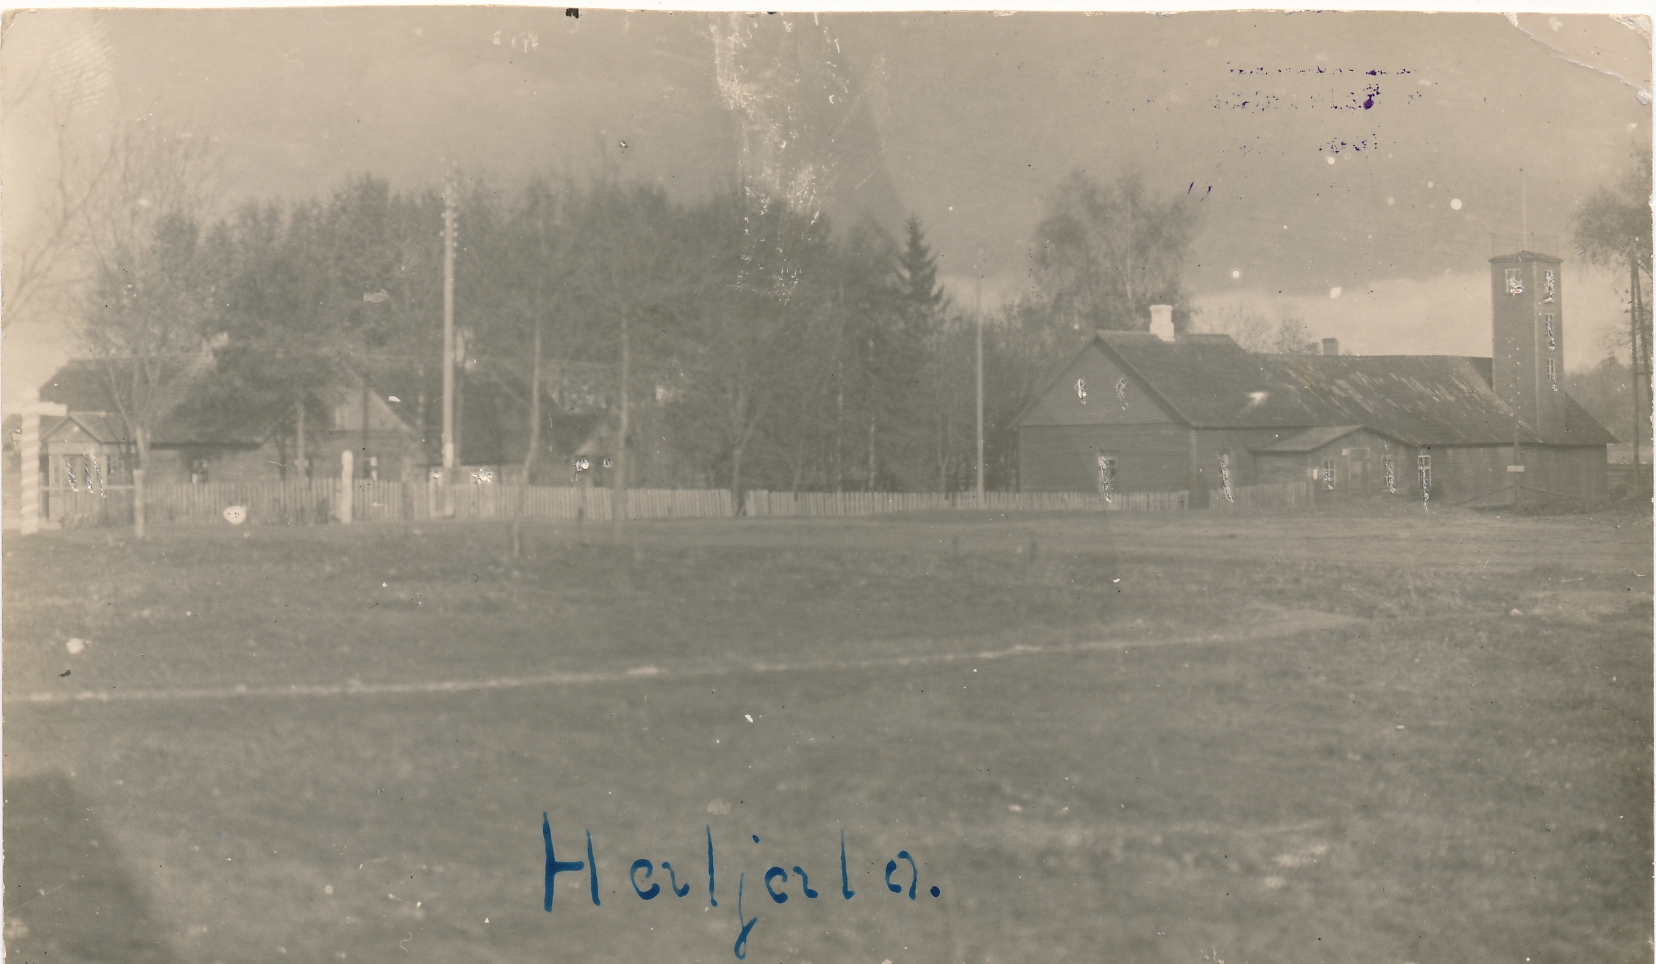 Haljala